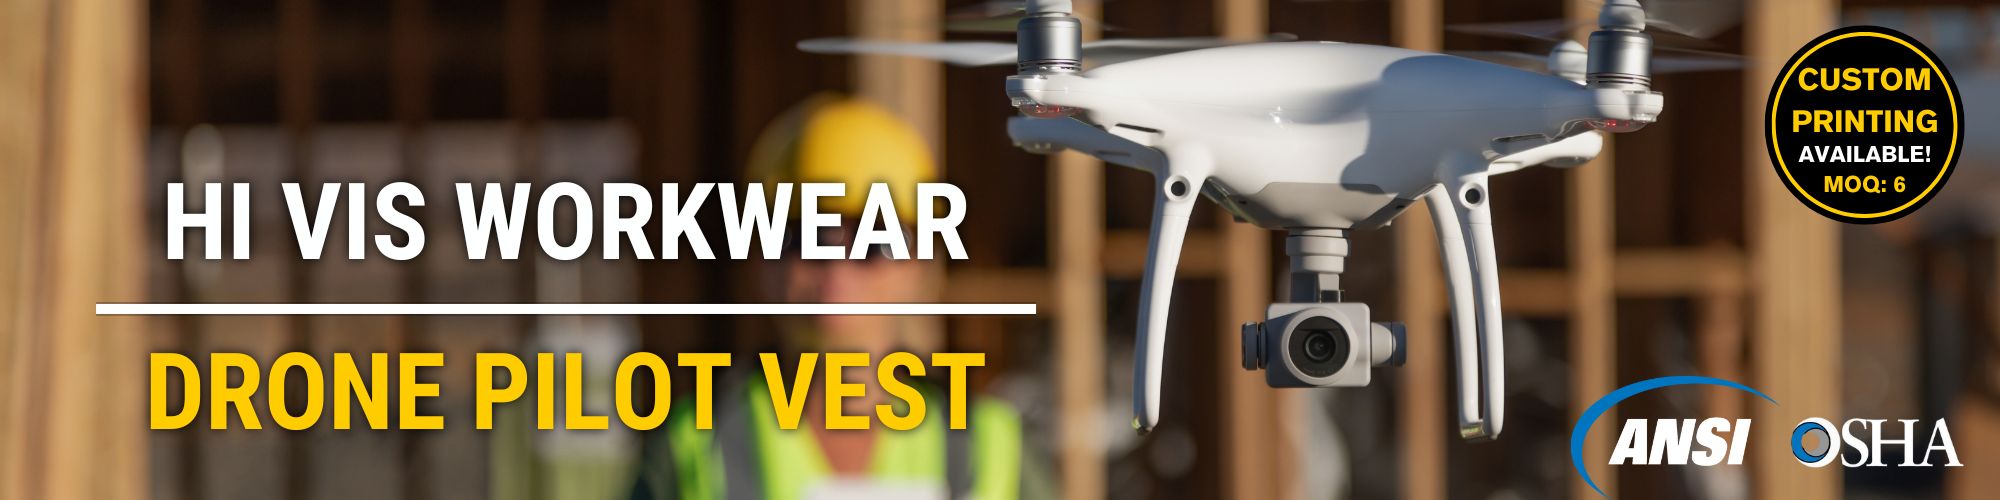 hi vis workwear drone pilot reflective safety vest